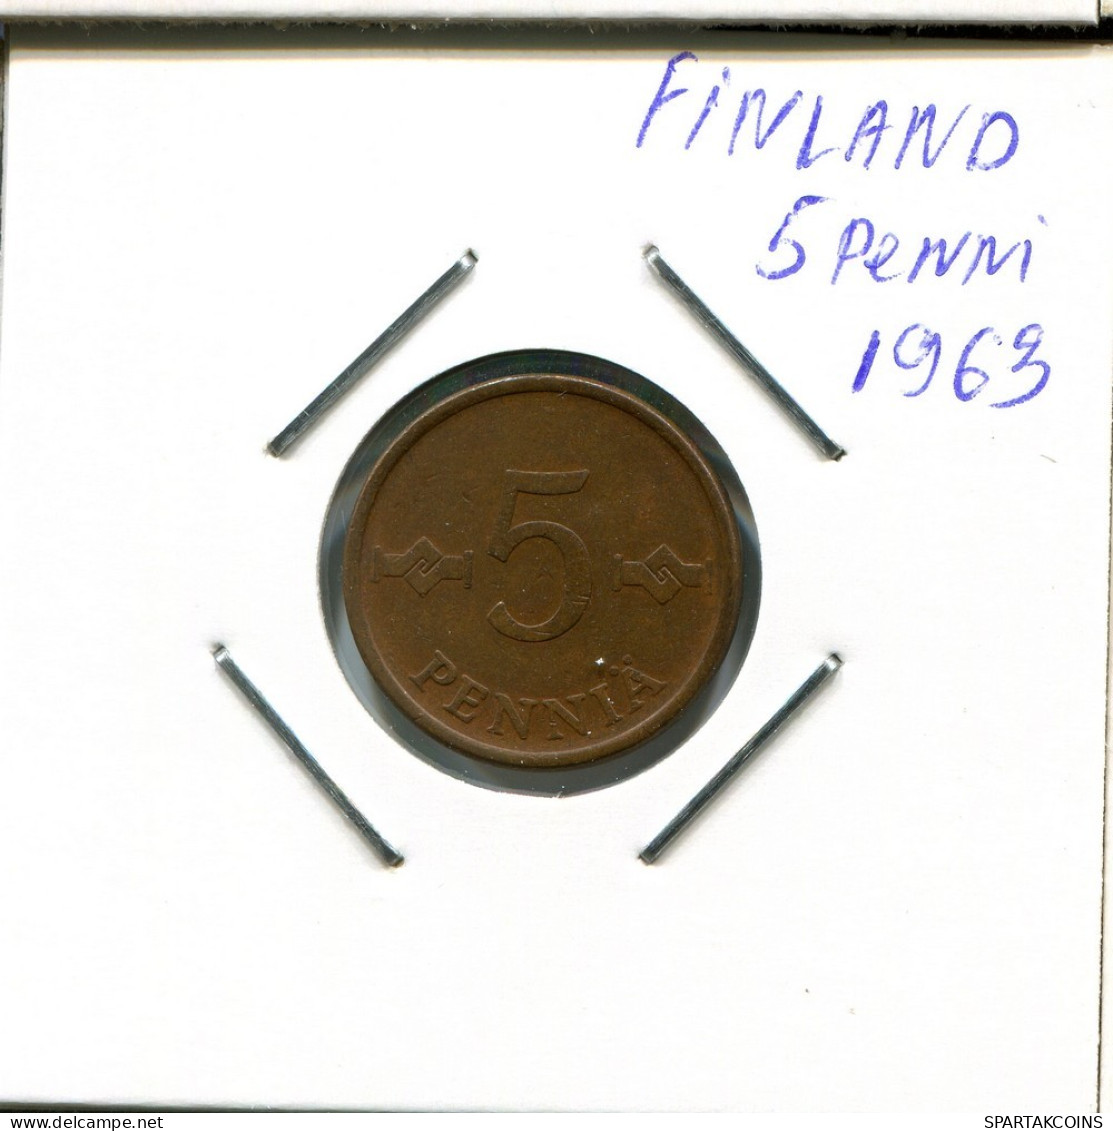 5 PENNY 1963 FINLANDIA FINLAND Moneda #AR334.E.A - Finlandia